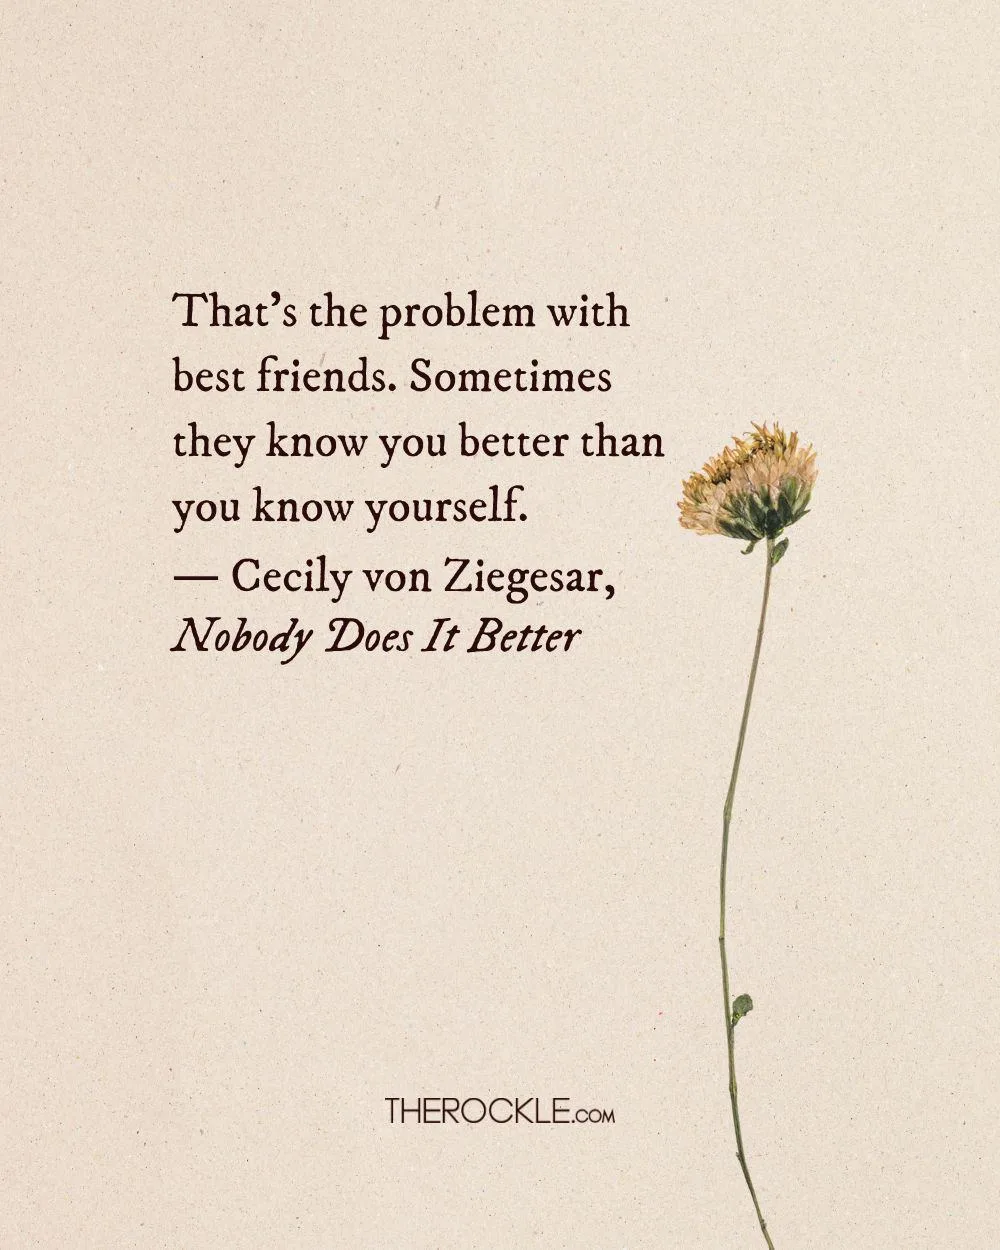 Cecily von Ziegesar on understanding between best friends